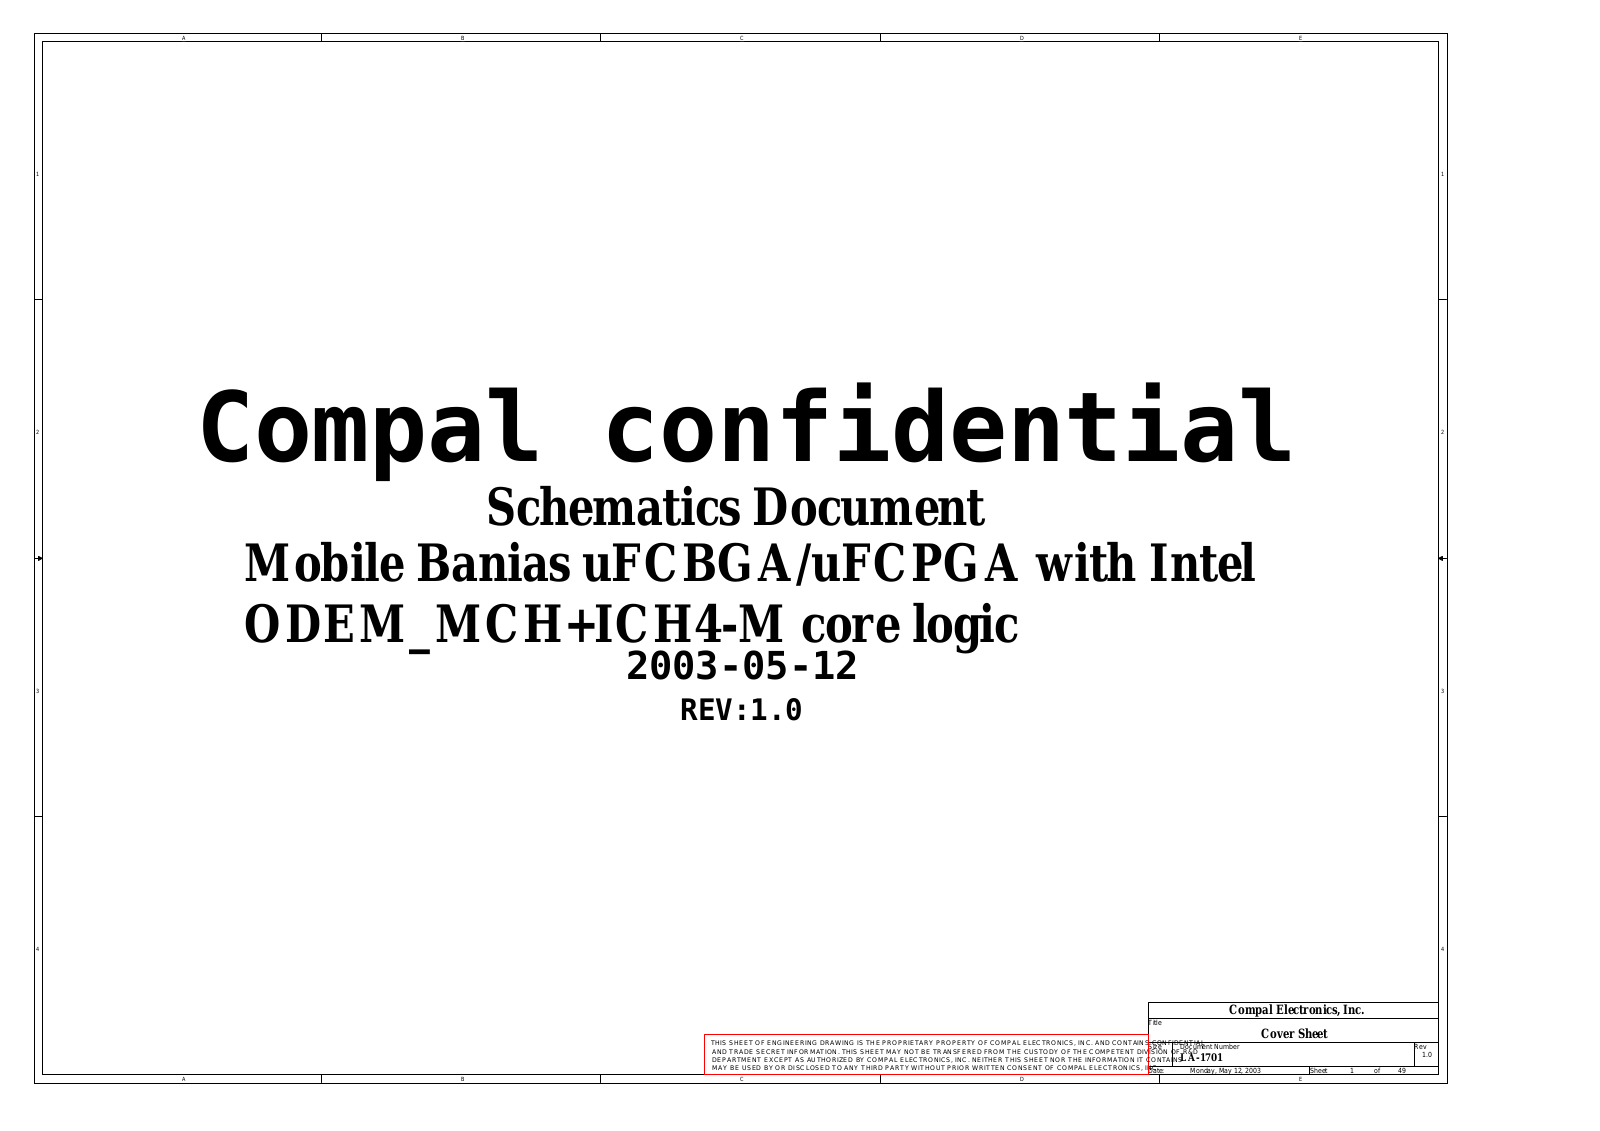 Compal LA-1701, Compaq nx7000, Compaq nx7010, Compaq Presario X1000, Pavilion zt3000 Schematic